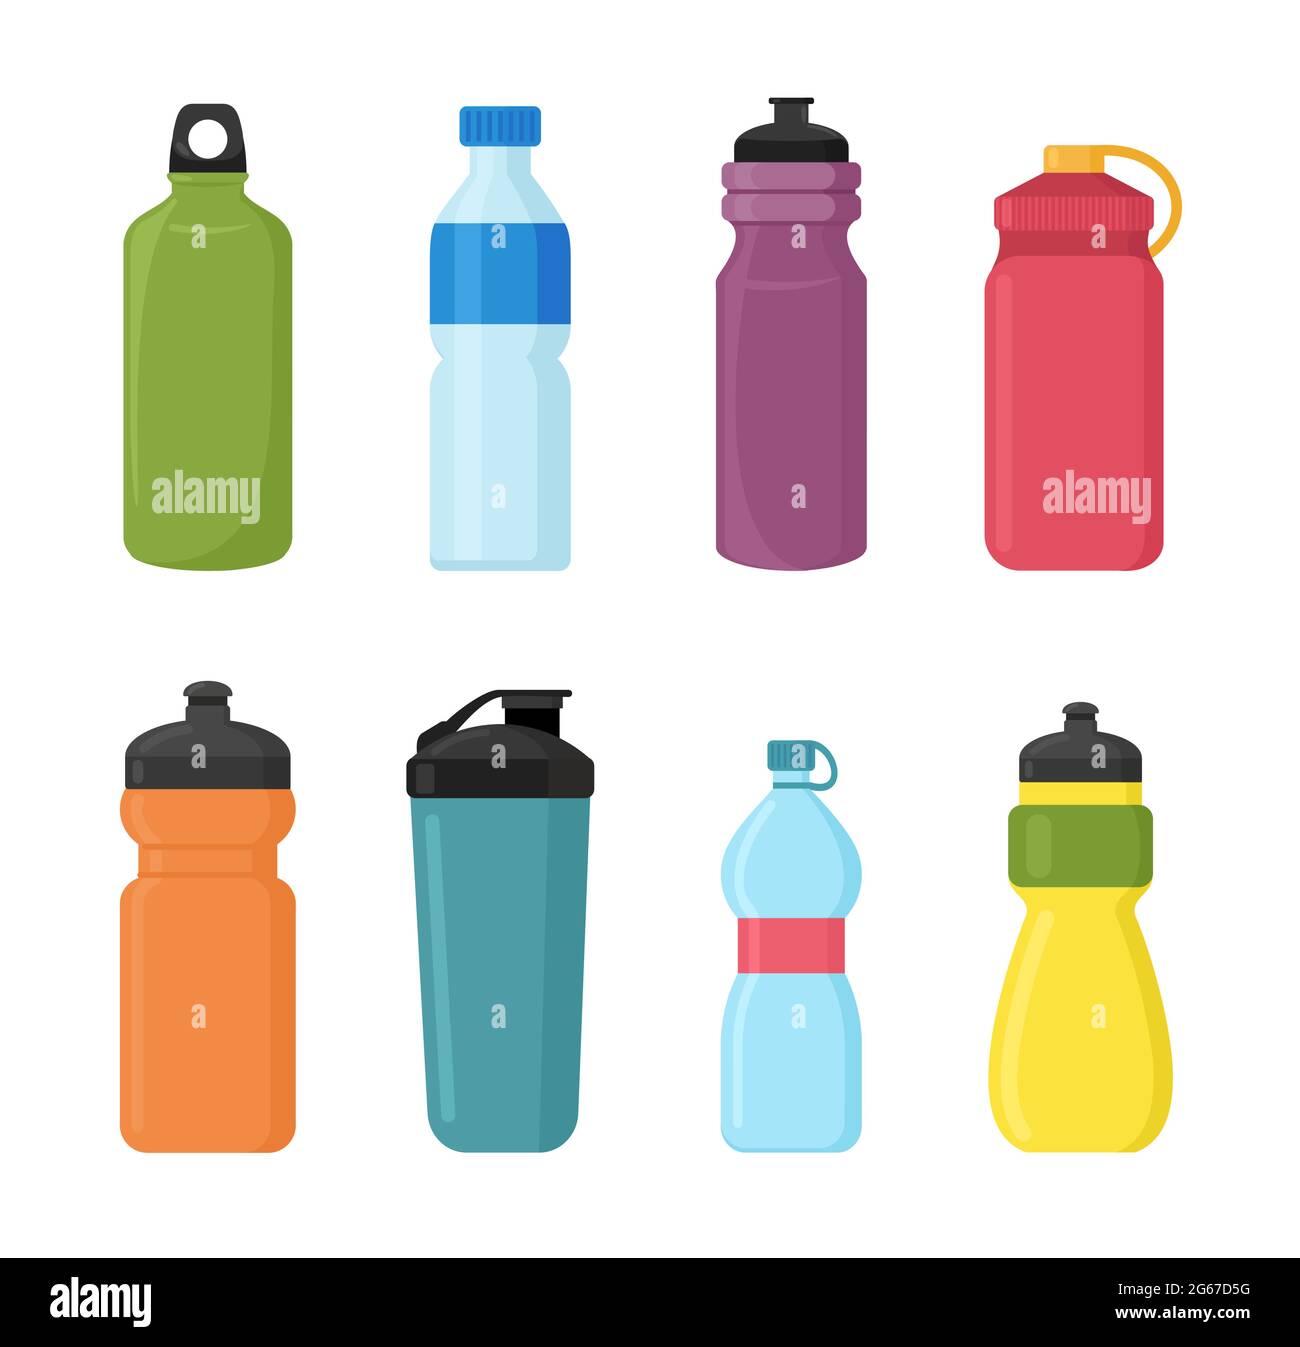 Illustrazione vettoriale Set di bottiglie di plastica per biciclette per acqua in diversi shaps e colori. Bottiglie d'acqua contenitore per lo sport. Naturale e sano Illustrazione Vettoriale